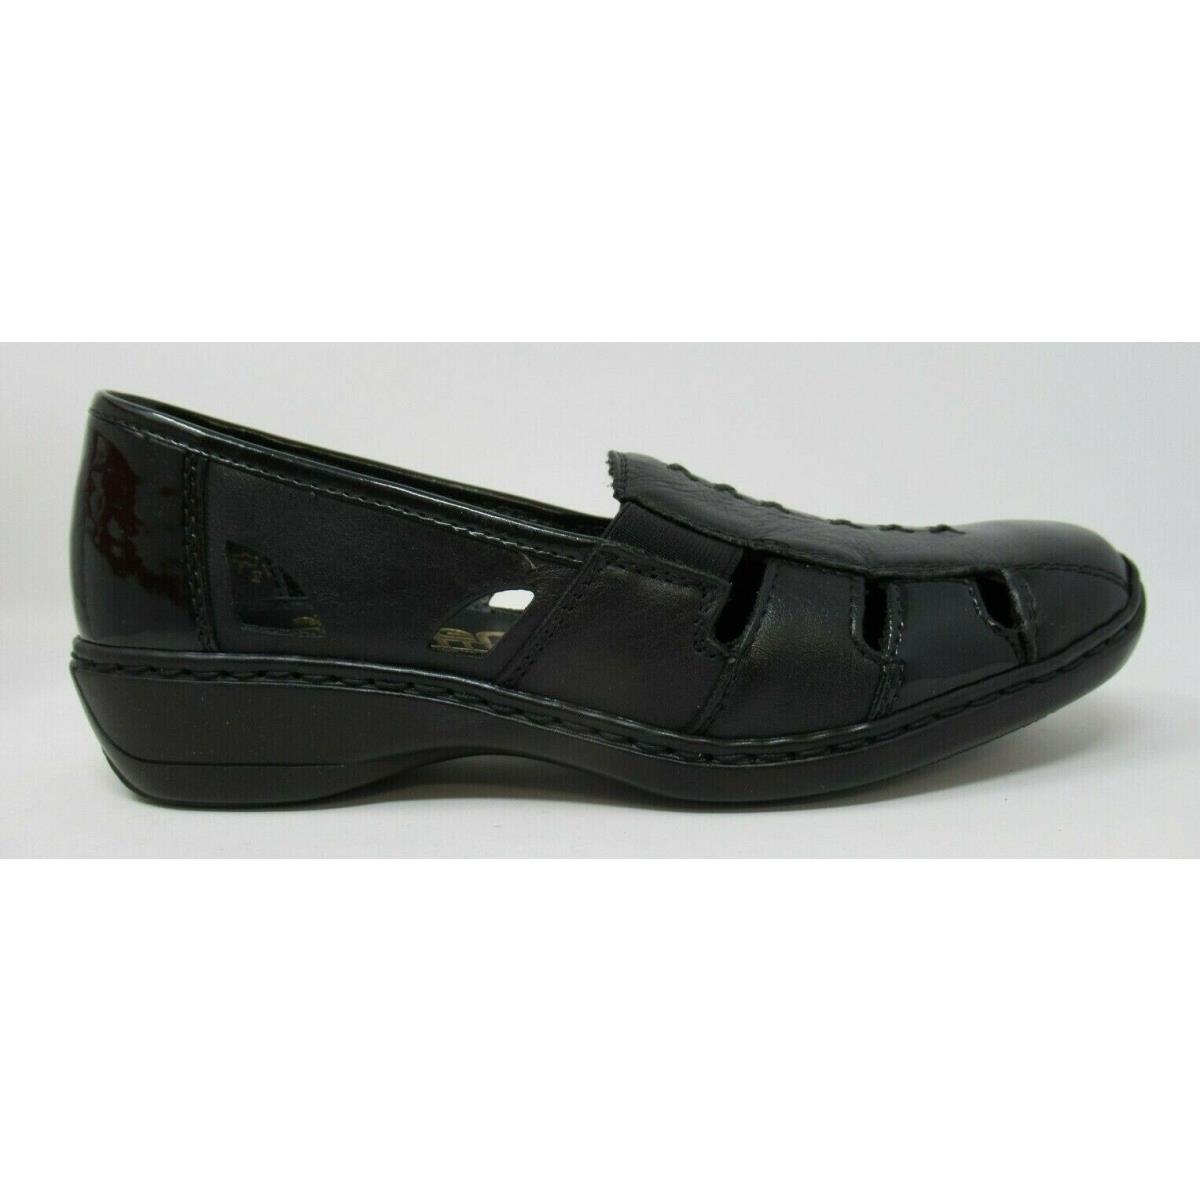 Rieker Women`s 41385 Black Lea. Slip-on Spring/summer Loafers Shoes Sz: 37 US 6